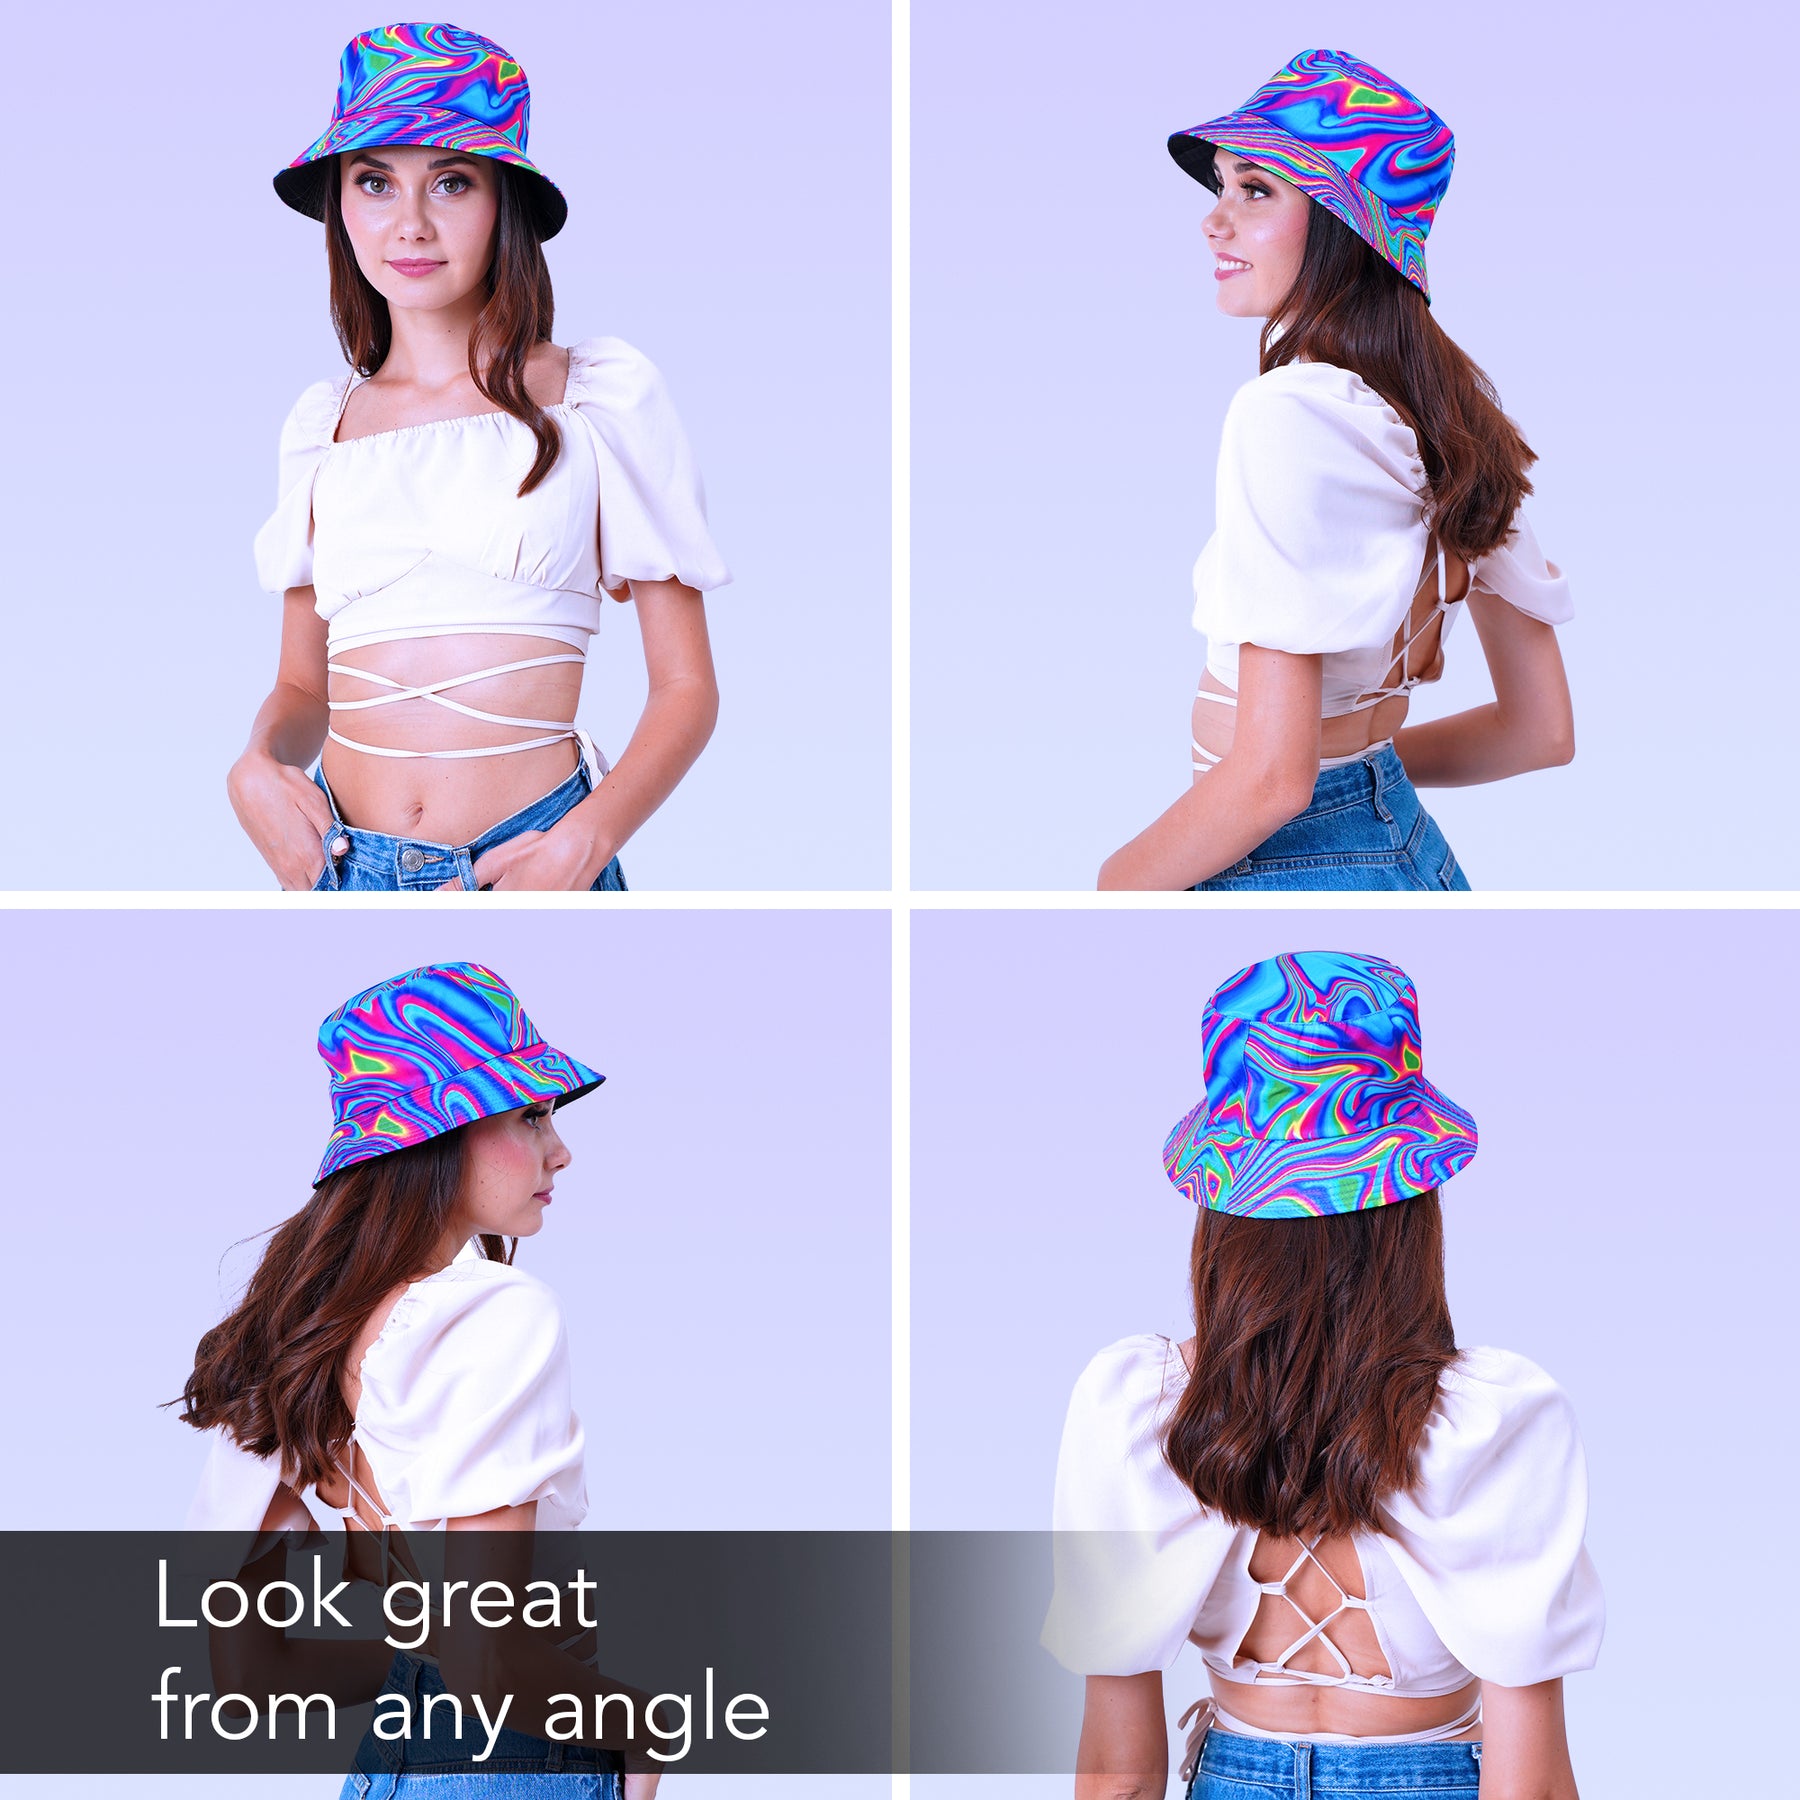 Rave Bucket Hat for Women & Men - Psychedelic